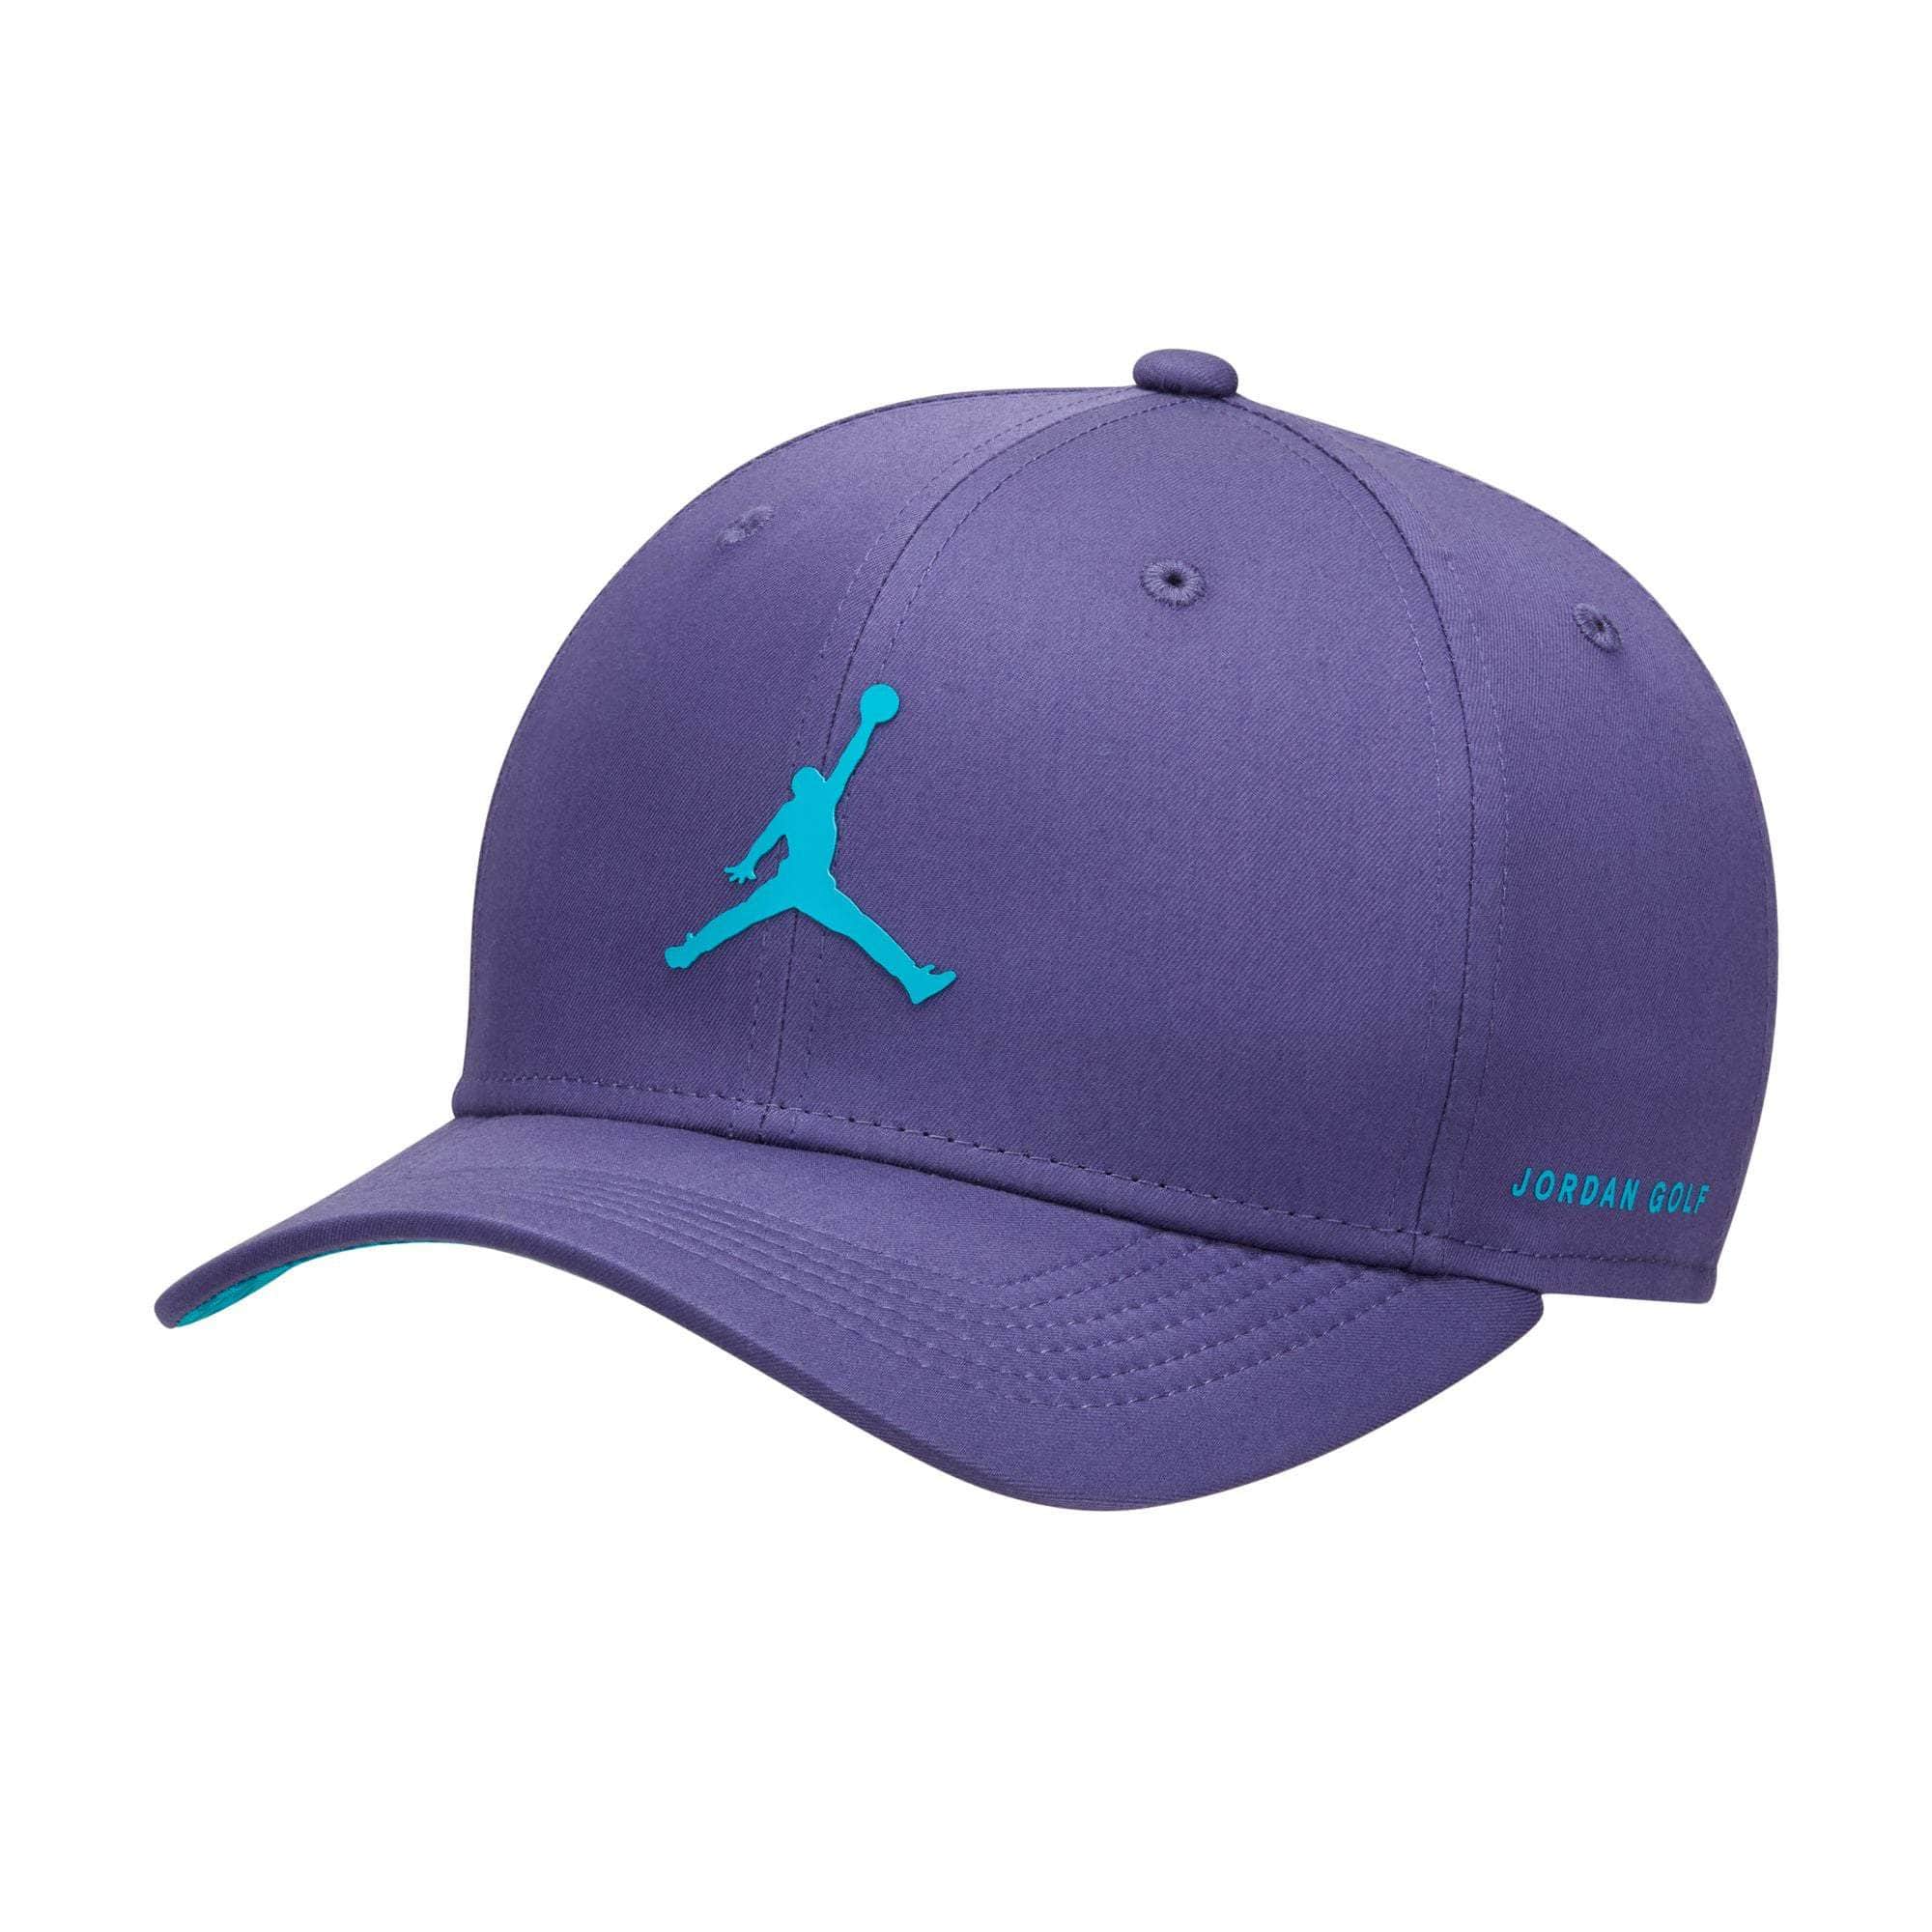 Air Jordan Apparel Air Jordan Golf Rise Cap Adjustable Structured Hat